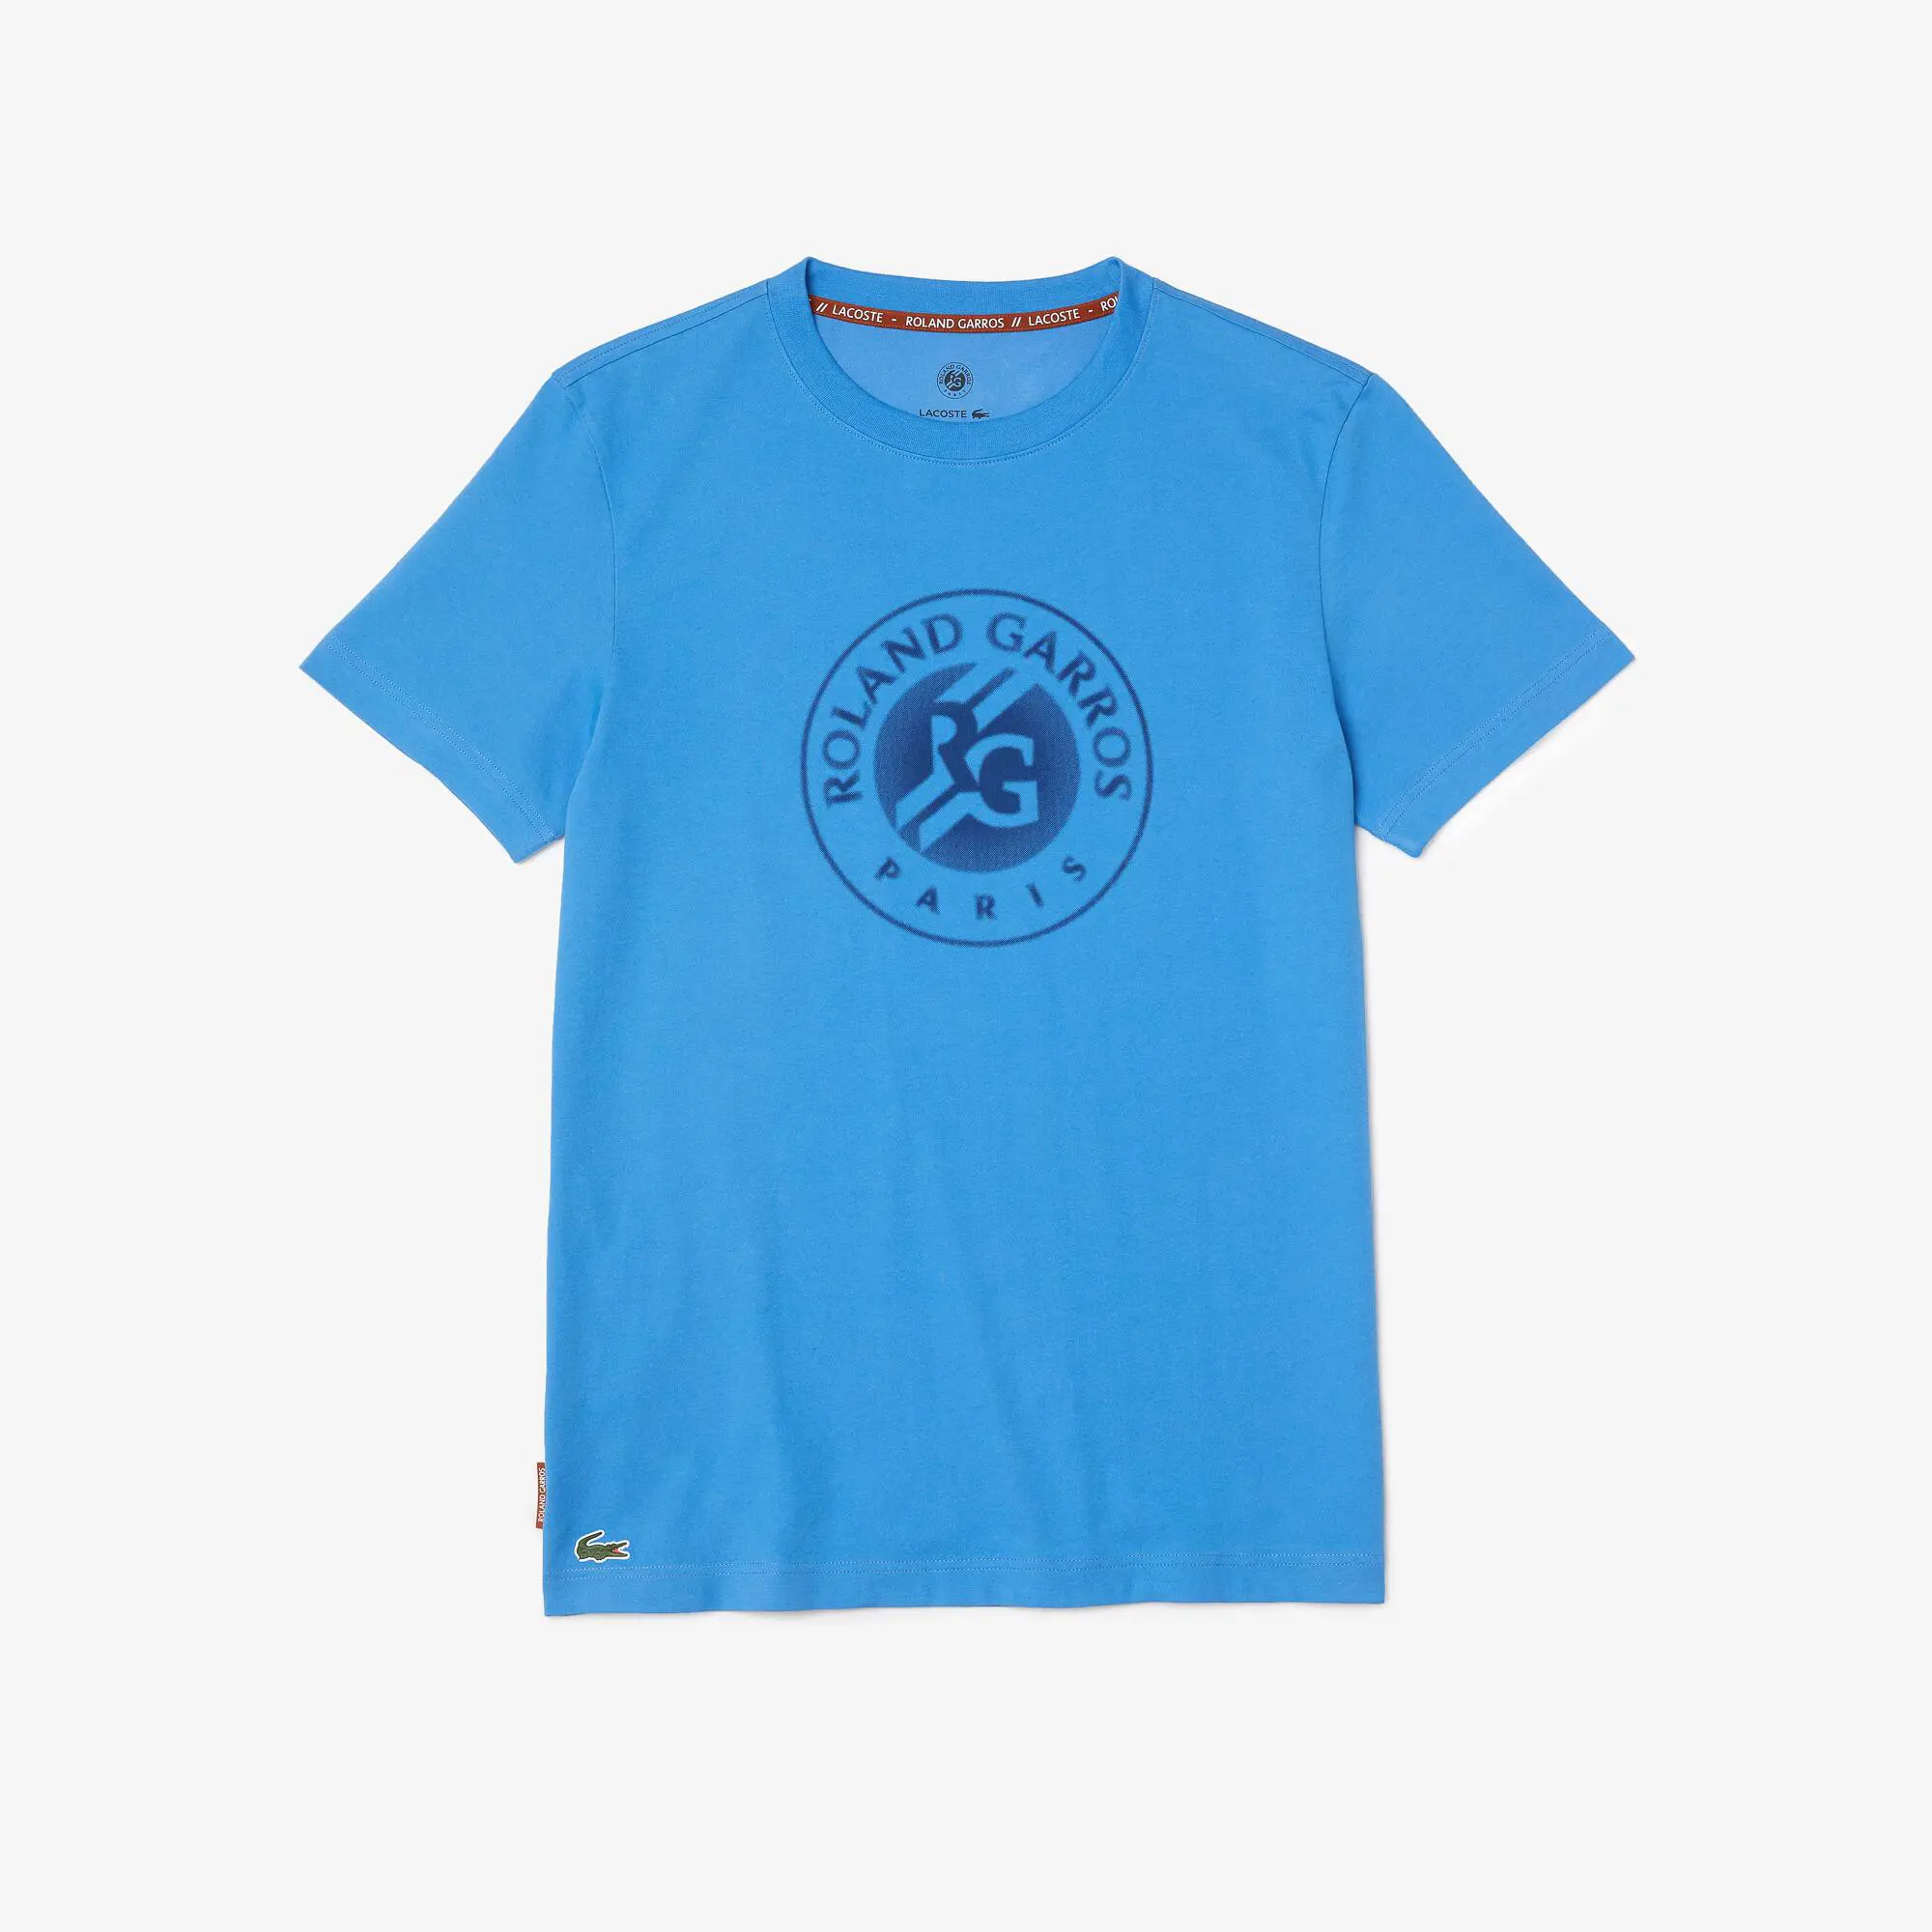 Lacoste Men's SPORT Roland Garros Organic Cotton T-Shirt. 2